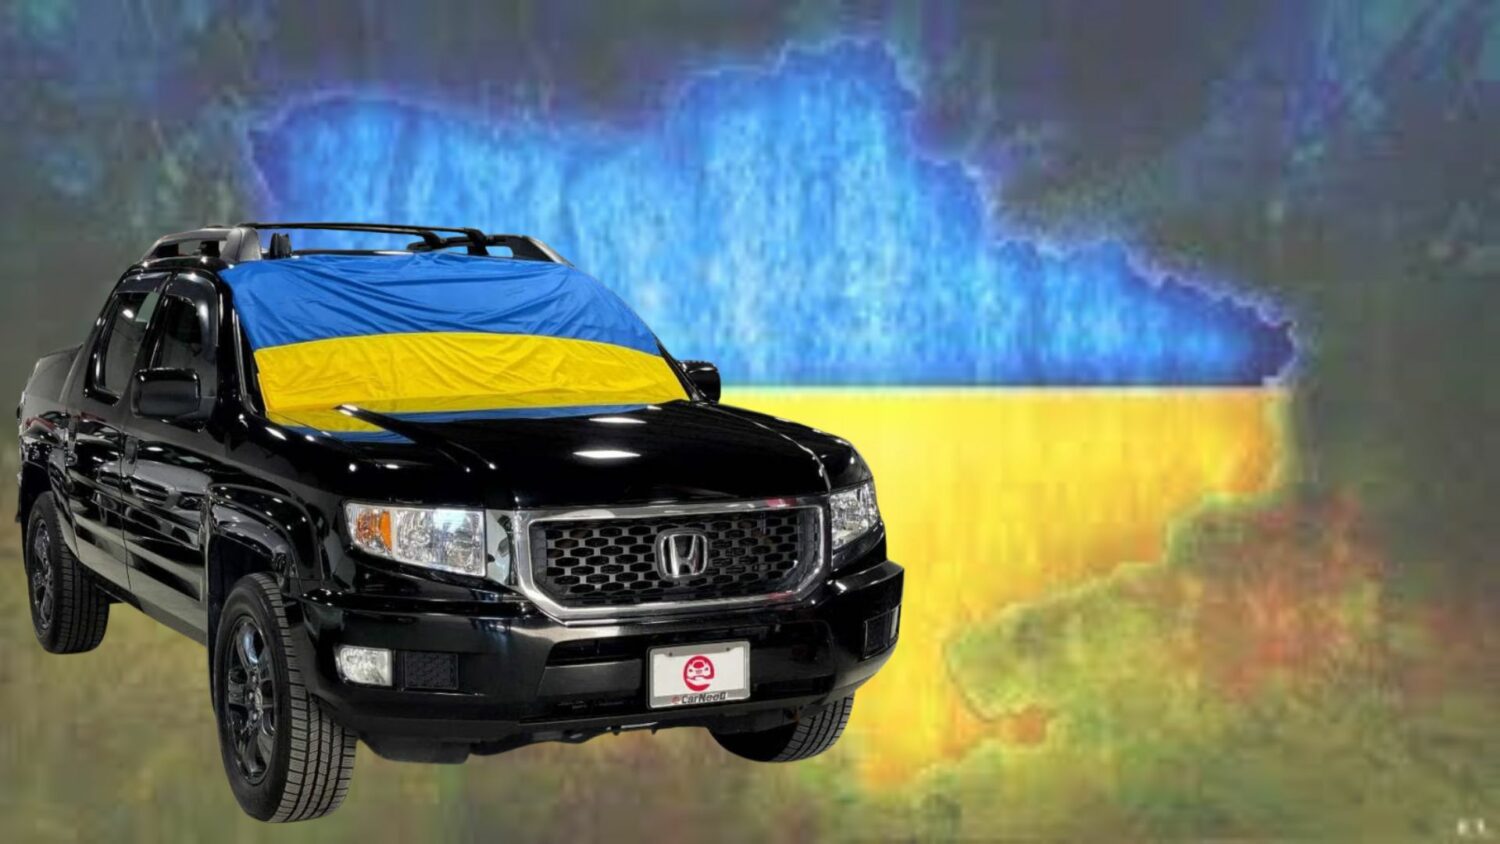 Ukraine-born, Ukrainian